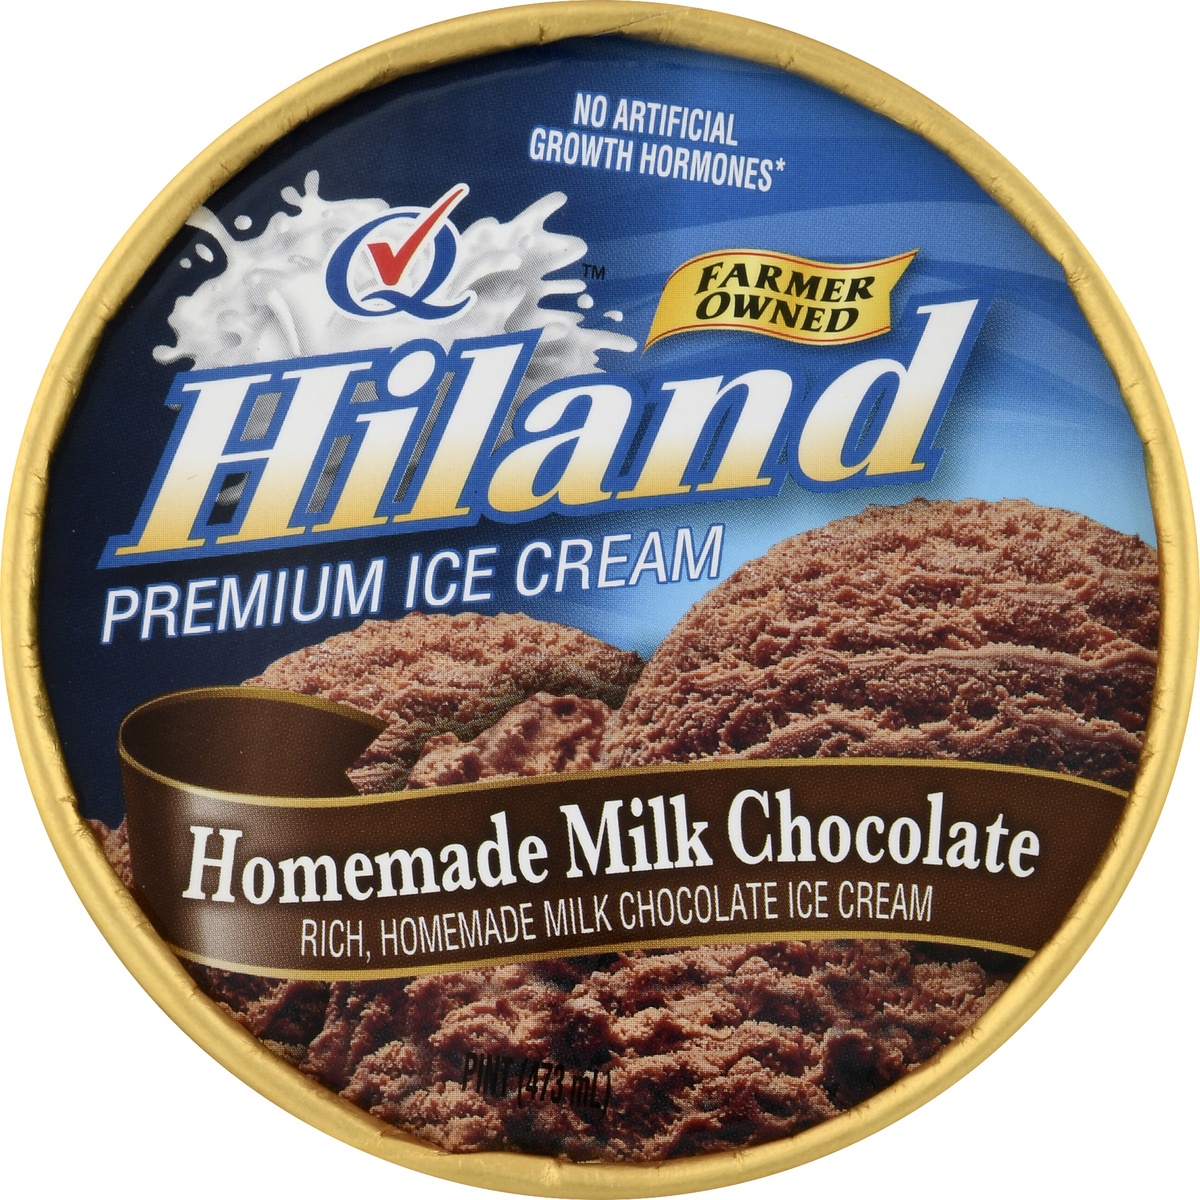 slide 6 of 10, Hiland Dairy Premium Ice Cream Homemade Milk Chocolate, 1 pint